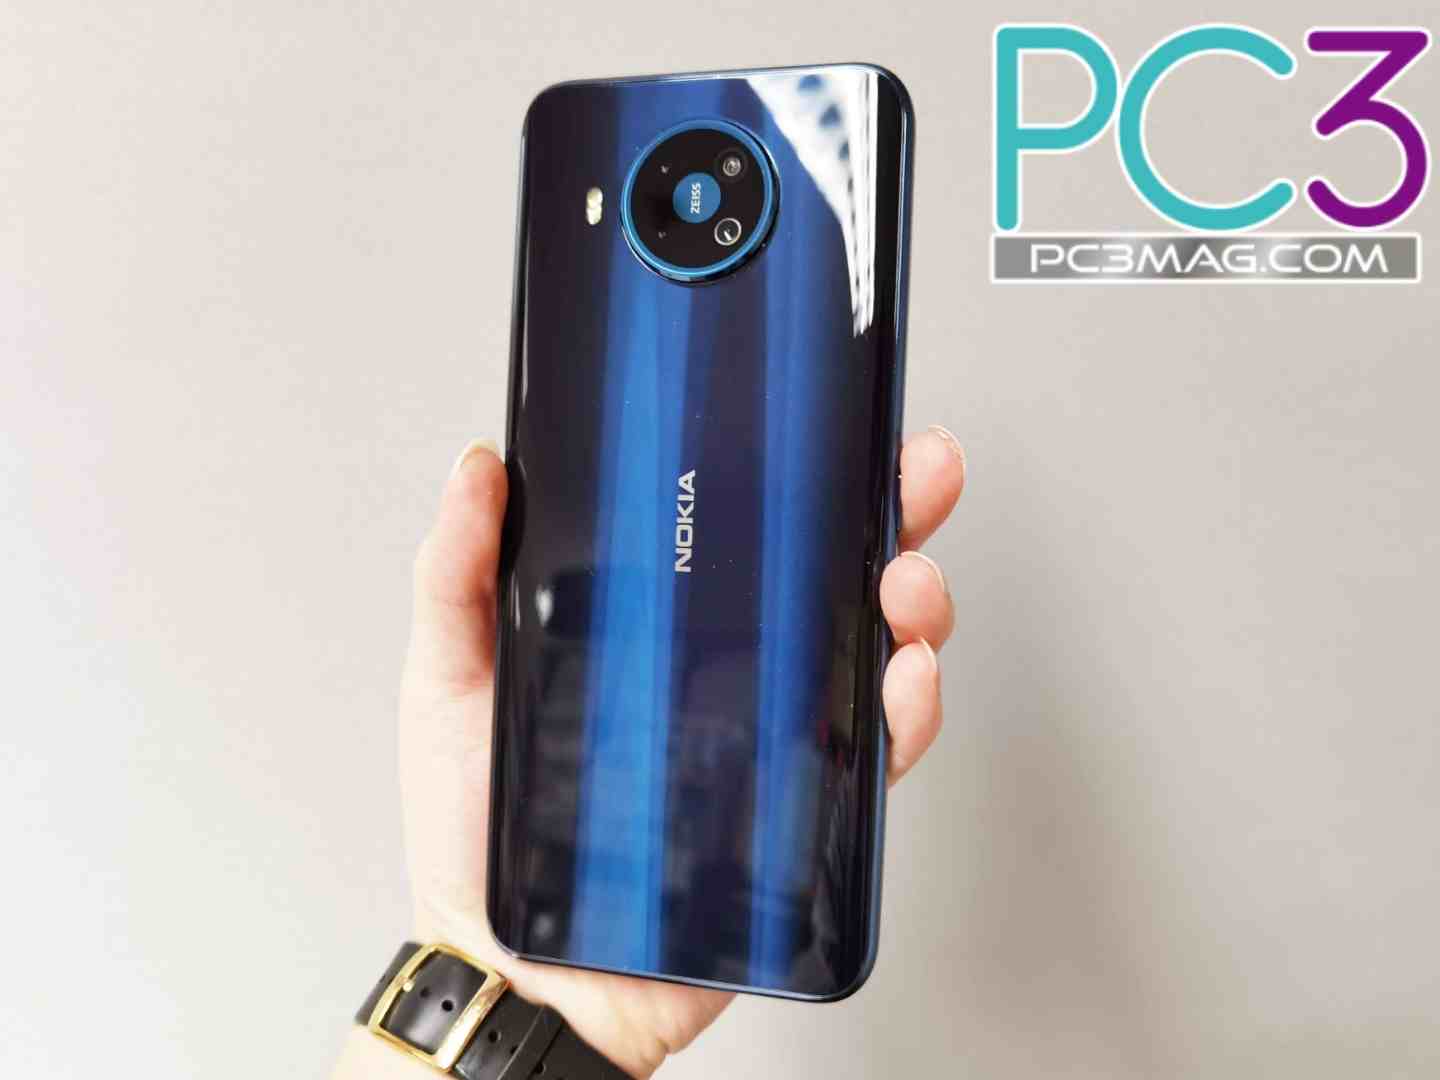 Nokia 首部全球通用 5G 手机：6.81 吋 Nokia 8.3 5G 行货评测